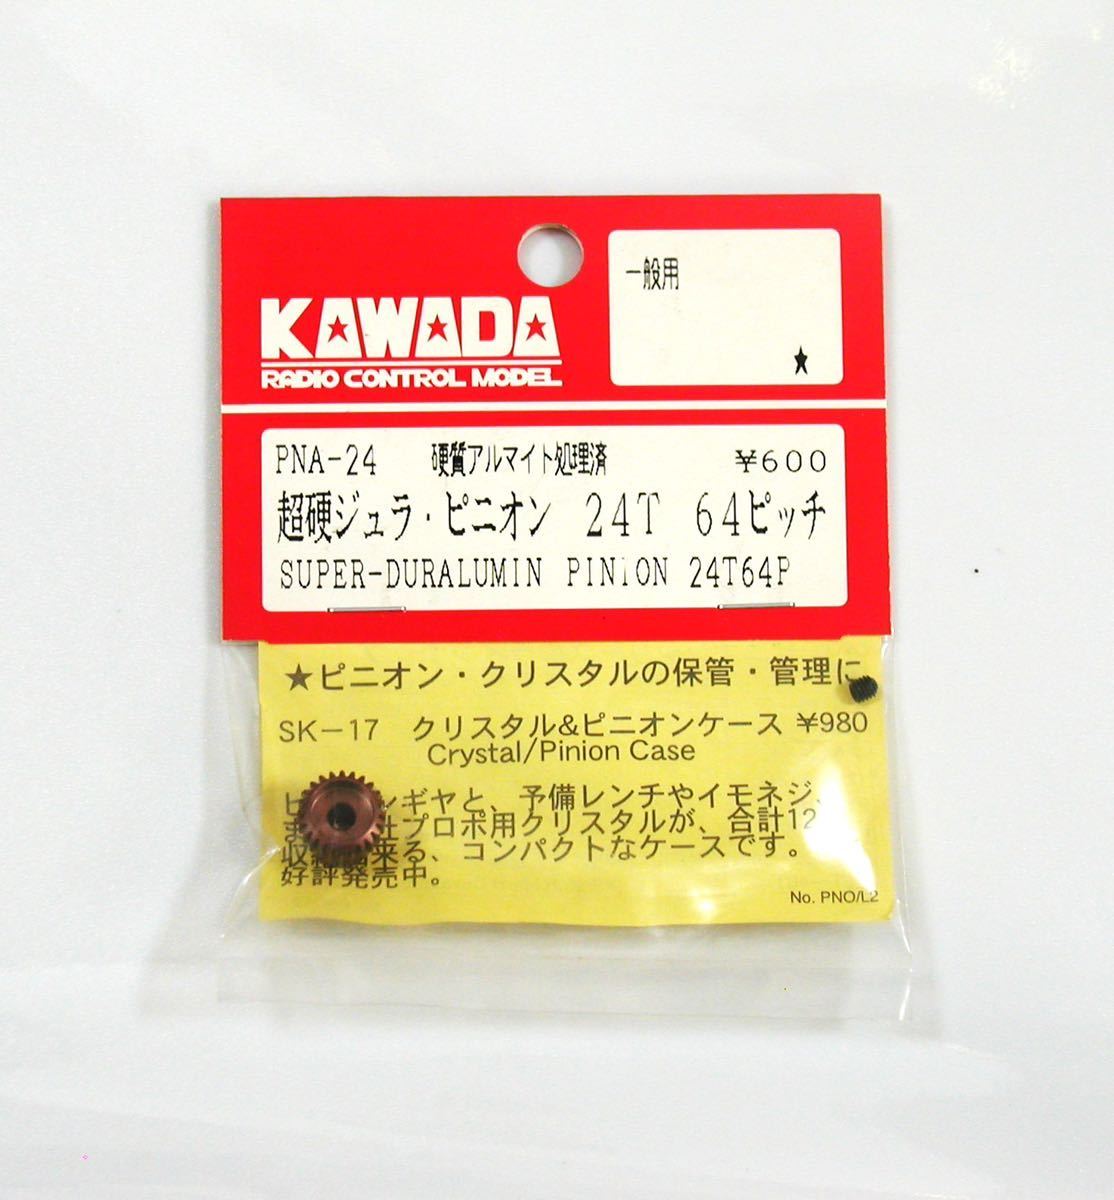 KAWADA 超硬ジュラピニオン24T 64ピッチ